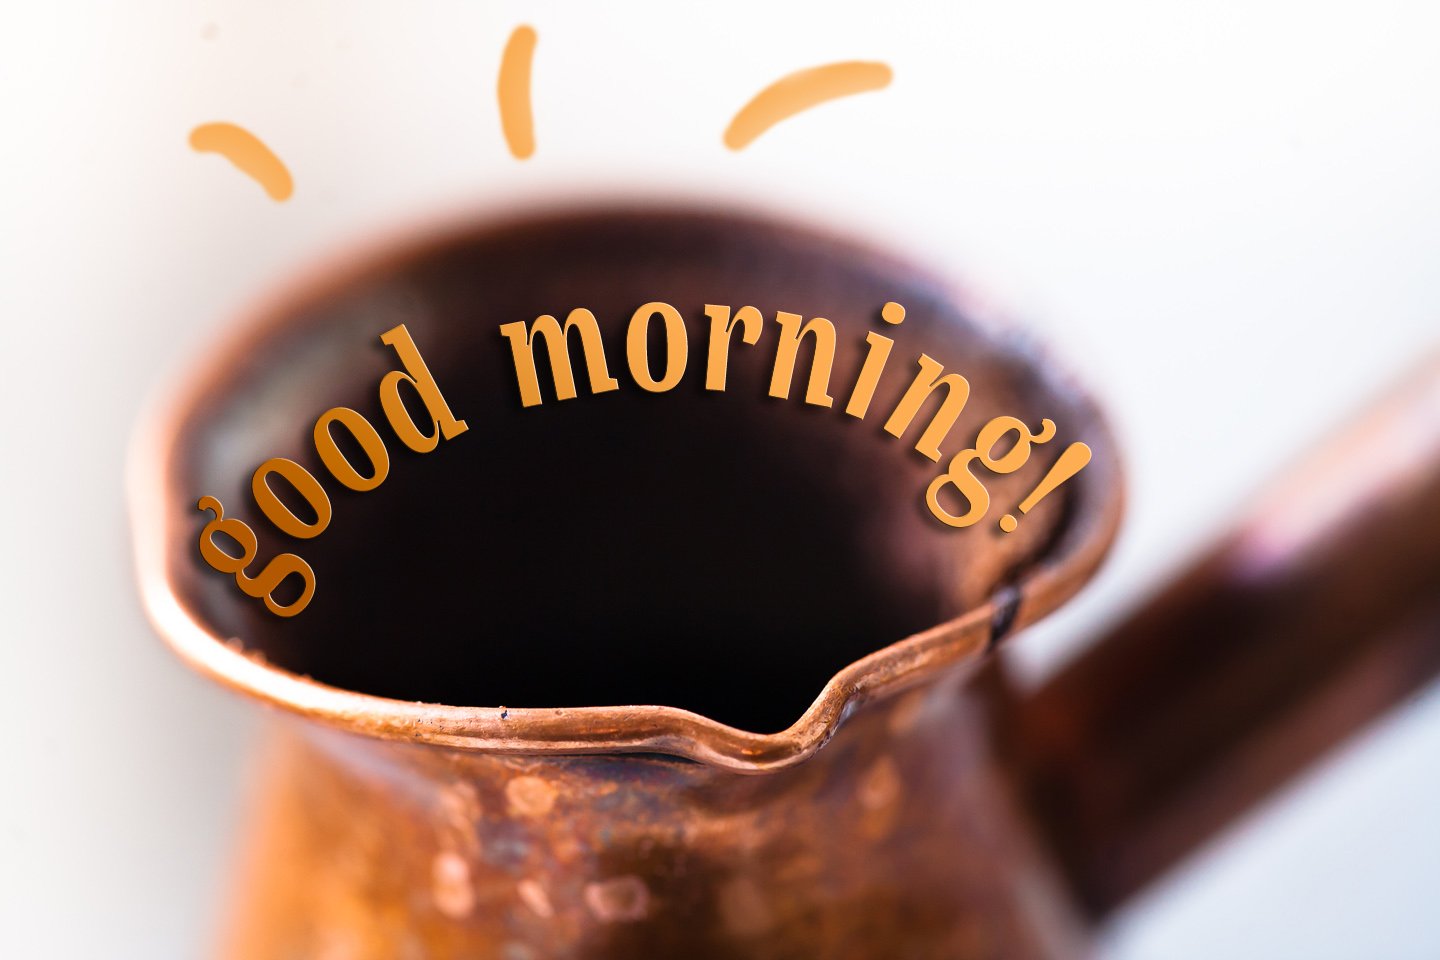 Утро картинки с надписями. С добрым утром. Утро кофе. Утренний кофе доброе утро. Кофейного утра!.